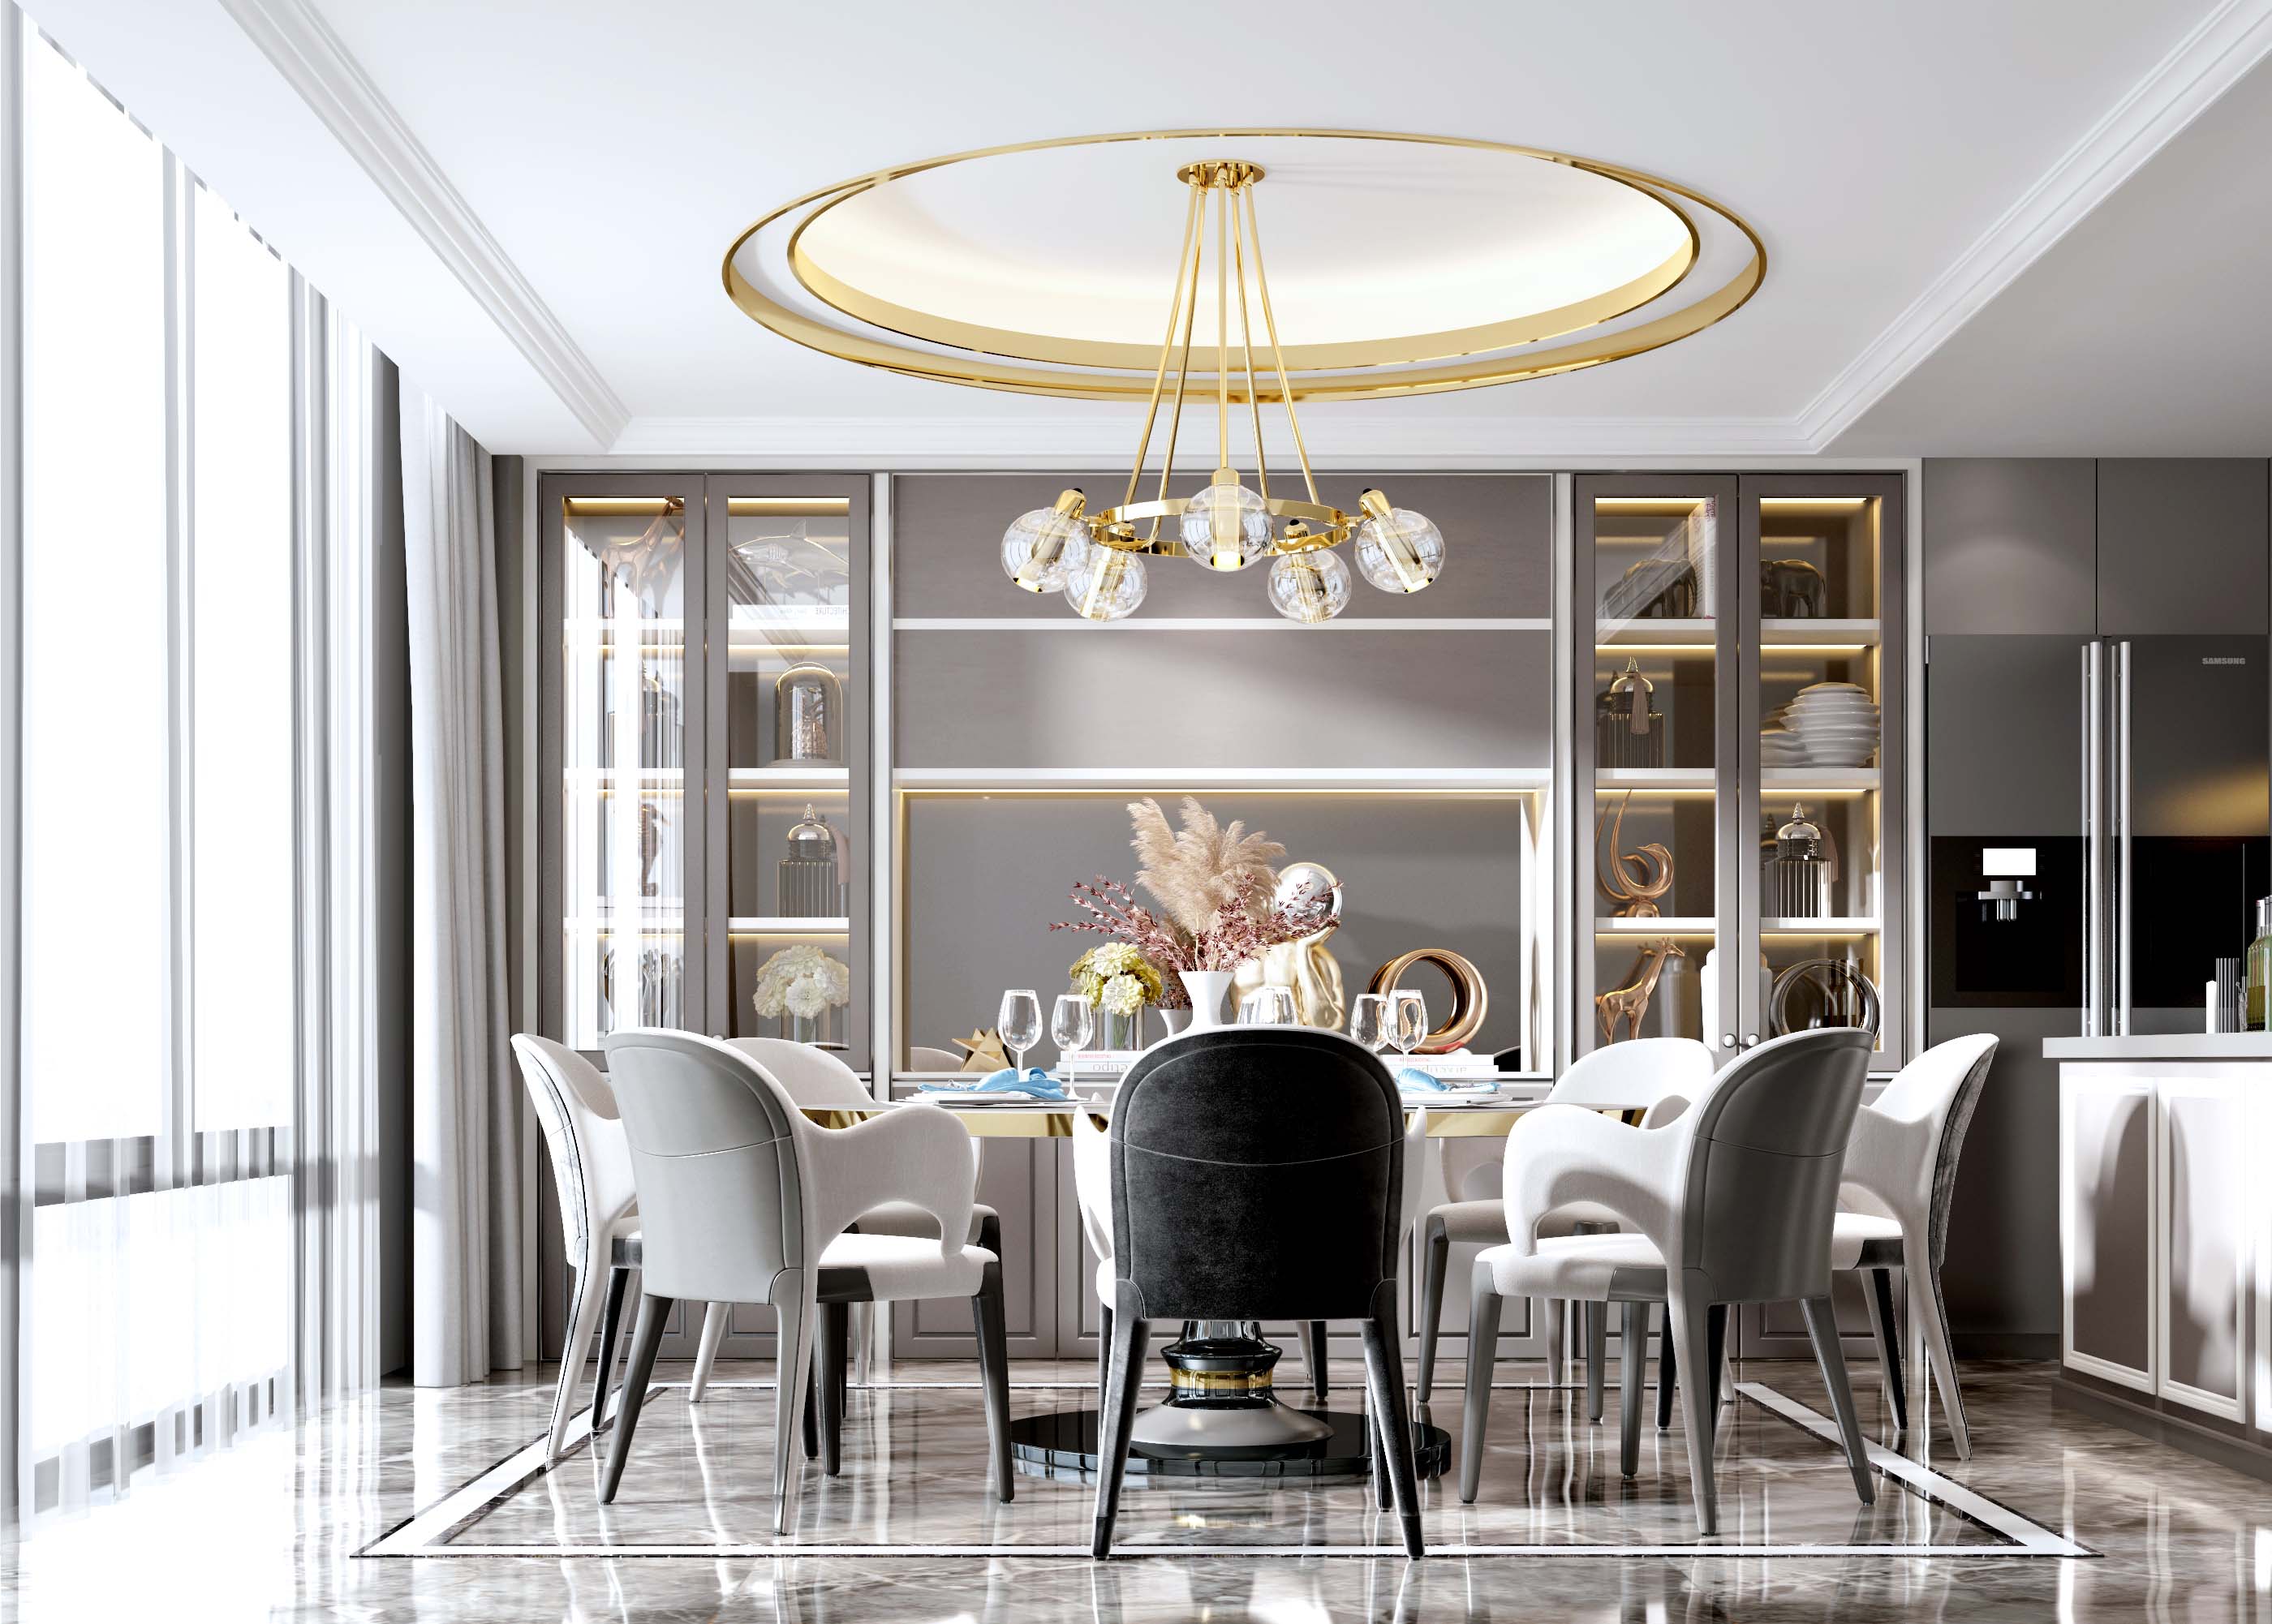 新中式餐厅 餐桌 餐椅 吊灯 挂画 边柜 餐具 装饰品-室内设计-拓者设计吧